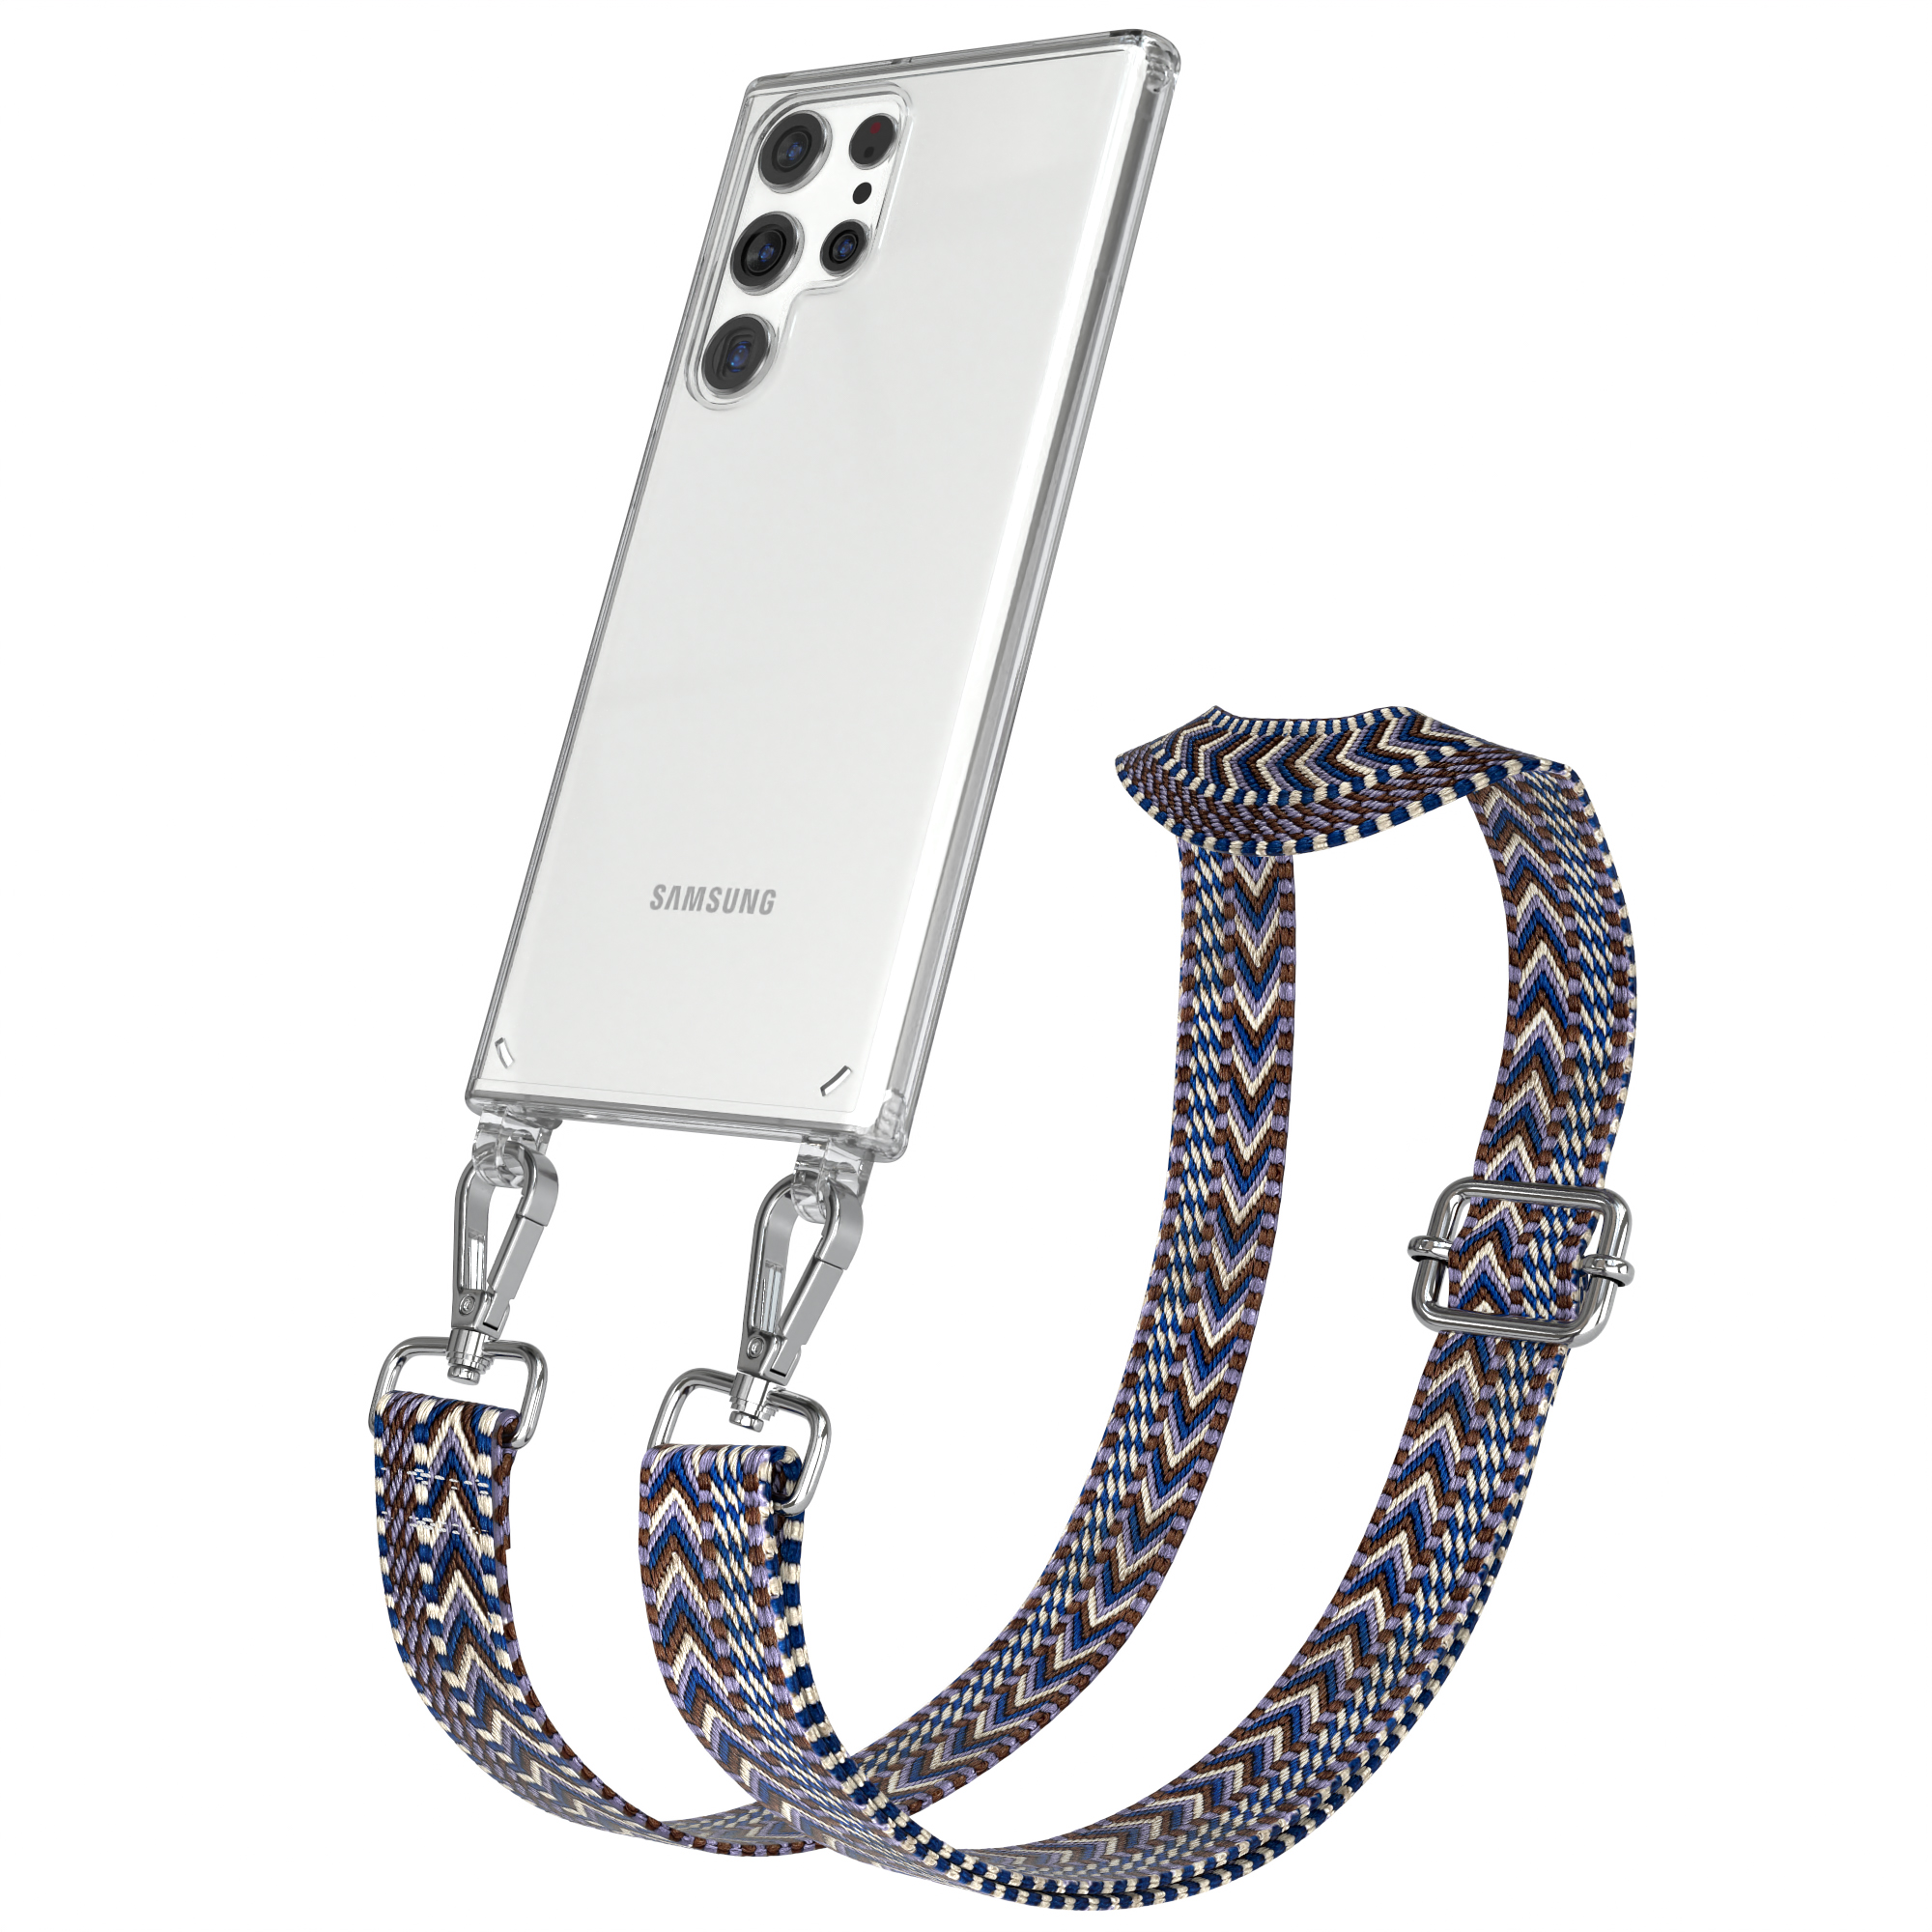 Blau mit Style, EAZY S22 Kordel Umhängetasche, Ultra Galaxy / Handyhülle Transparente 5G, Boho Weiß CASE Samsung,